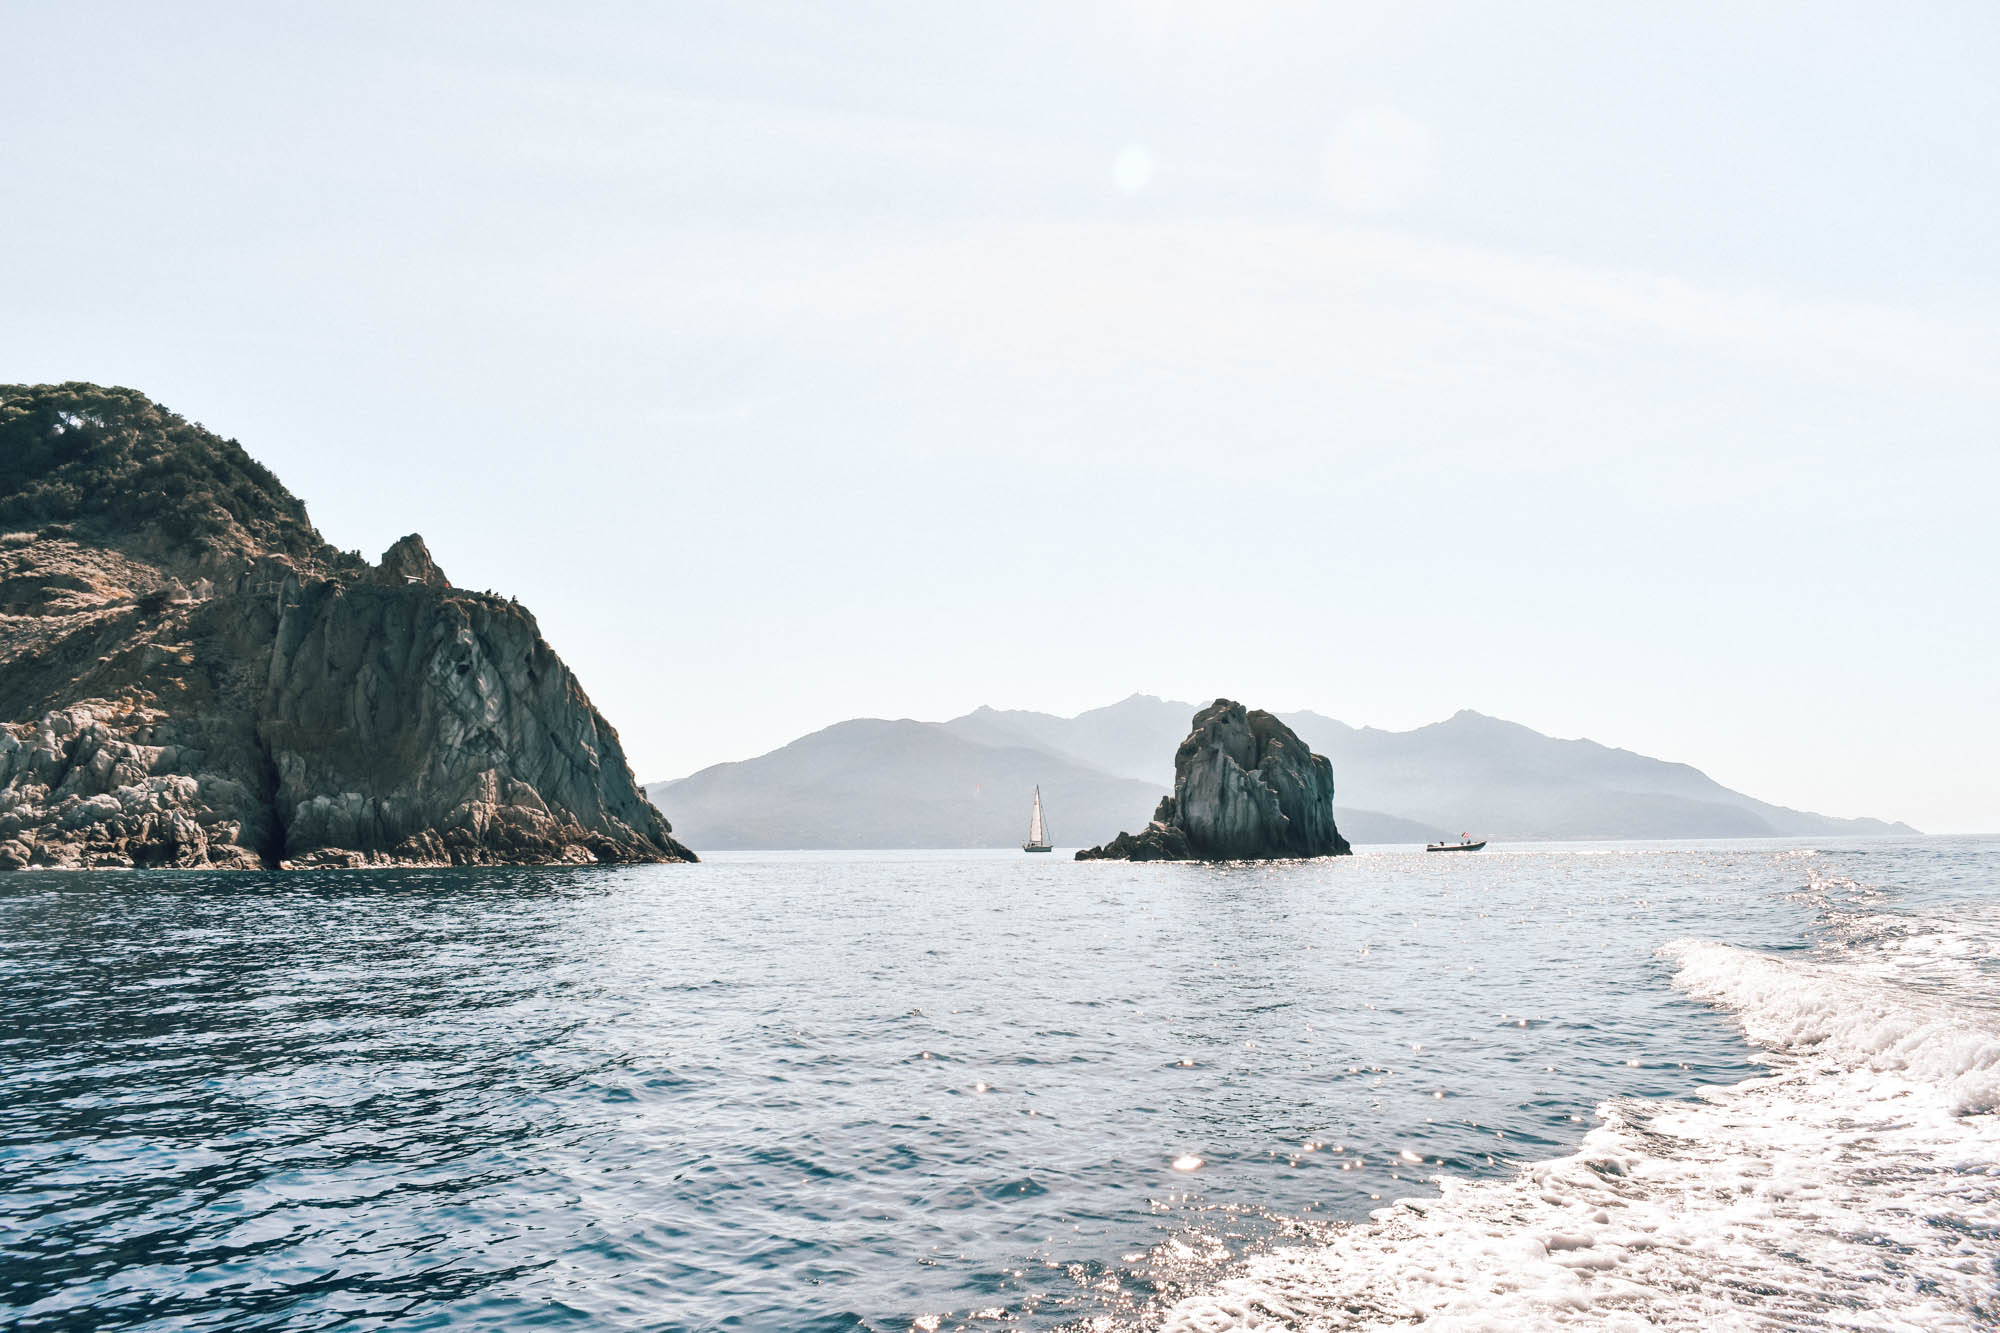 Alugar um barco por conta própria na Ilha de Elba na Itália